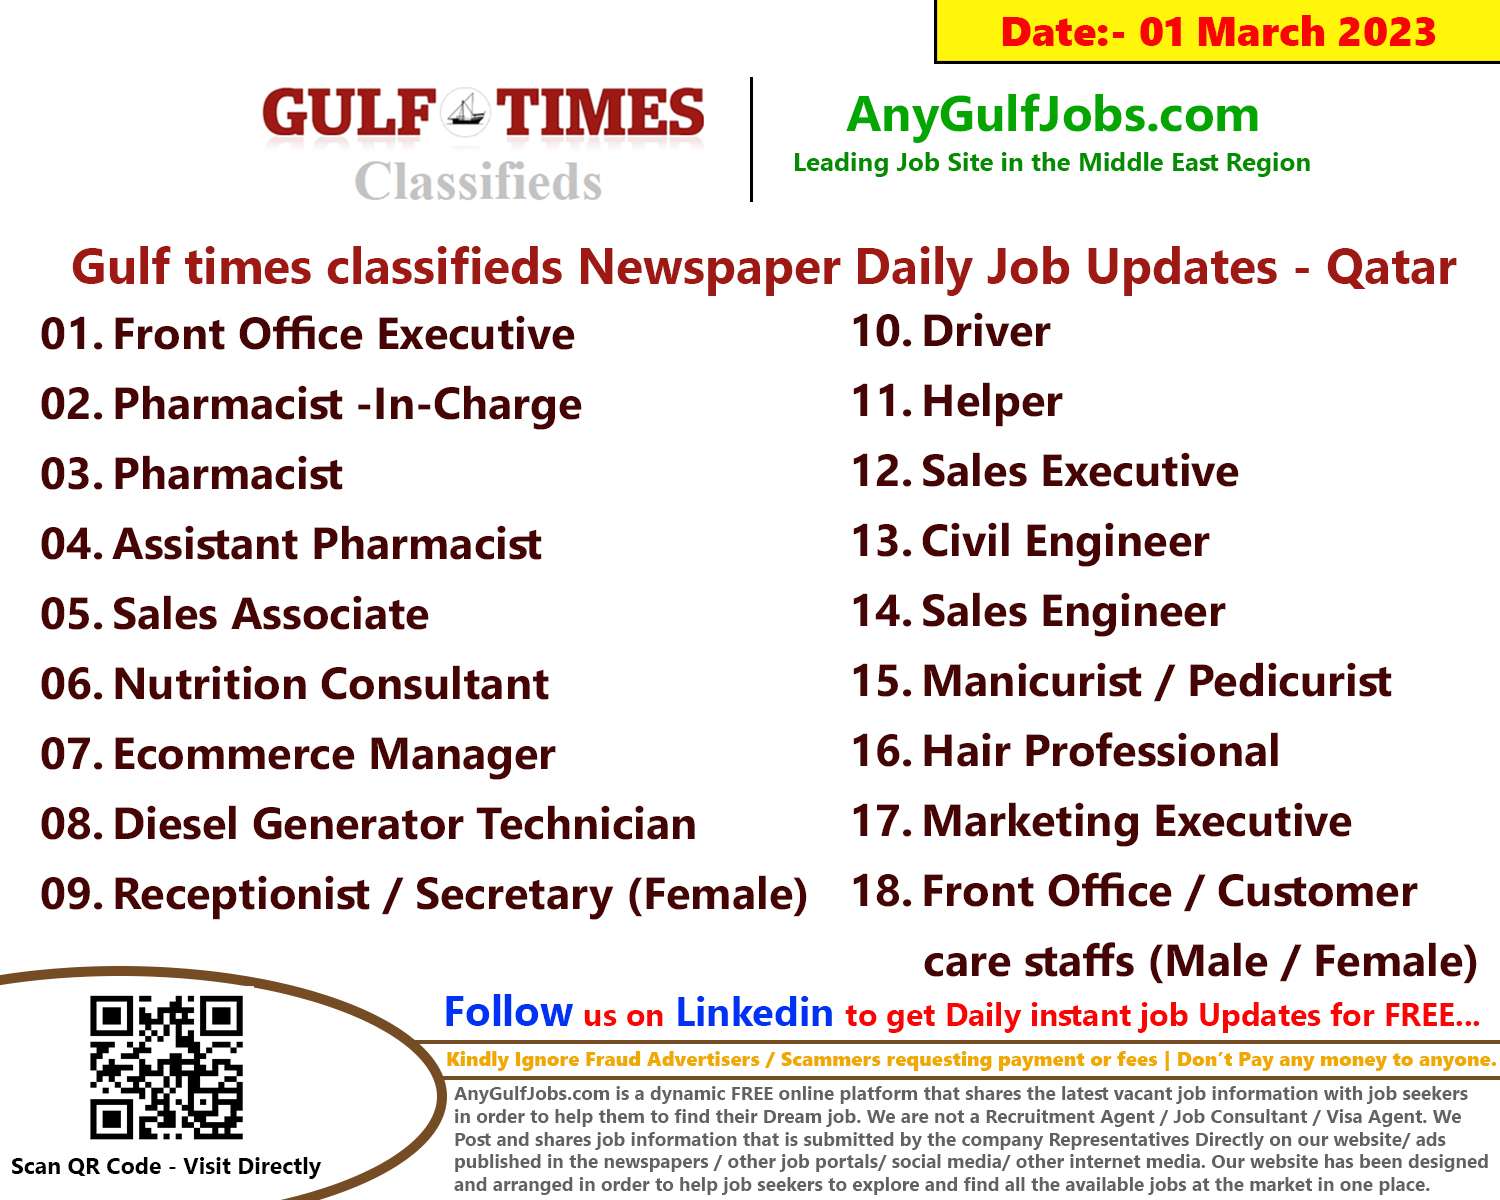 Gulf times classifieds Job Vacancies Qatar - 01 March 2023